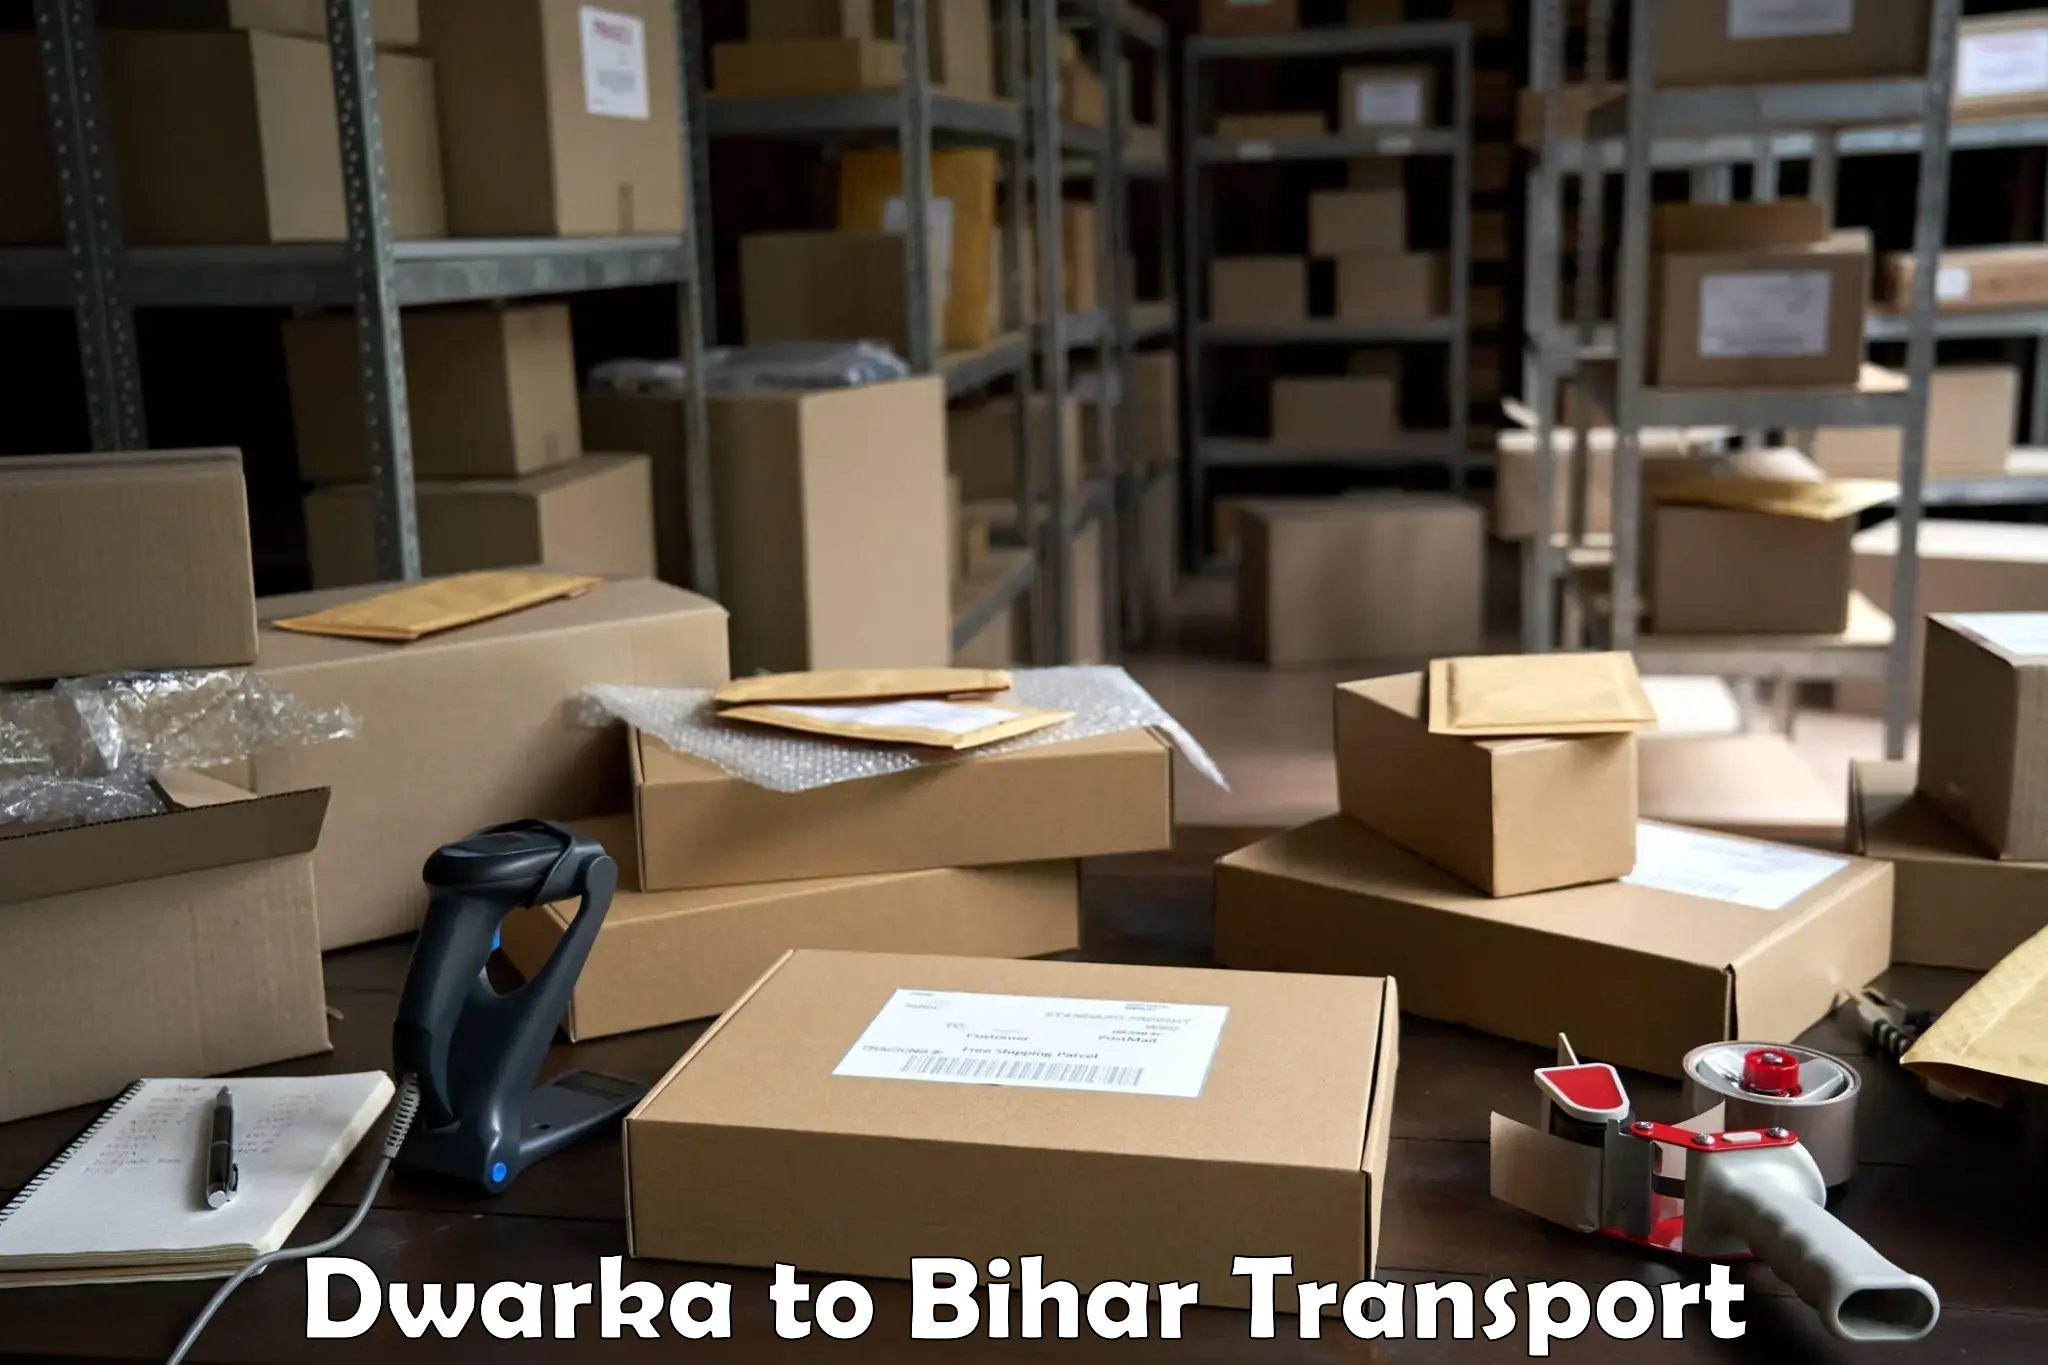 Road transport online services Dwarka to Dighwara